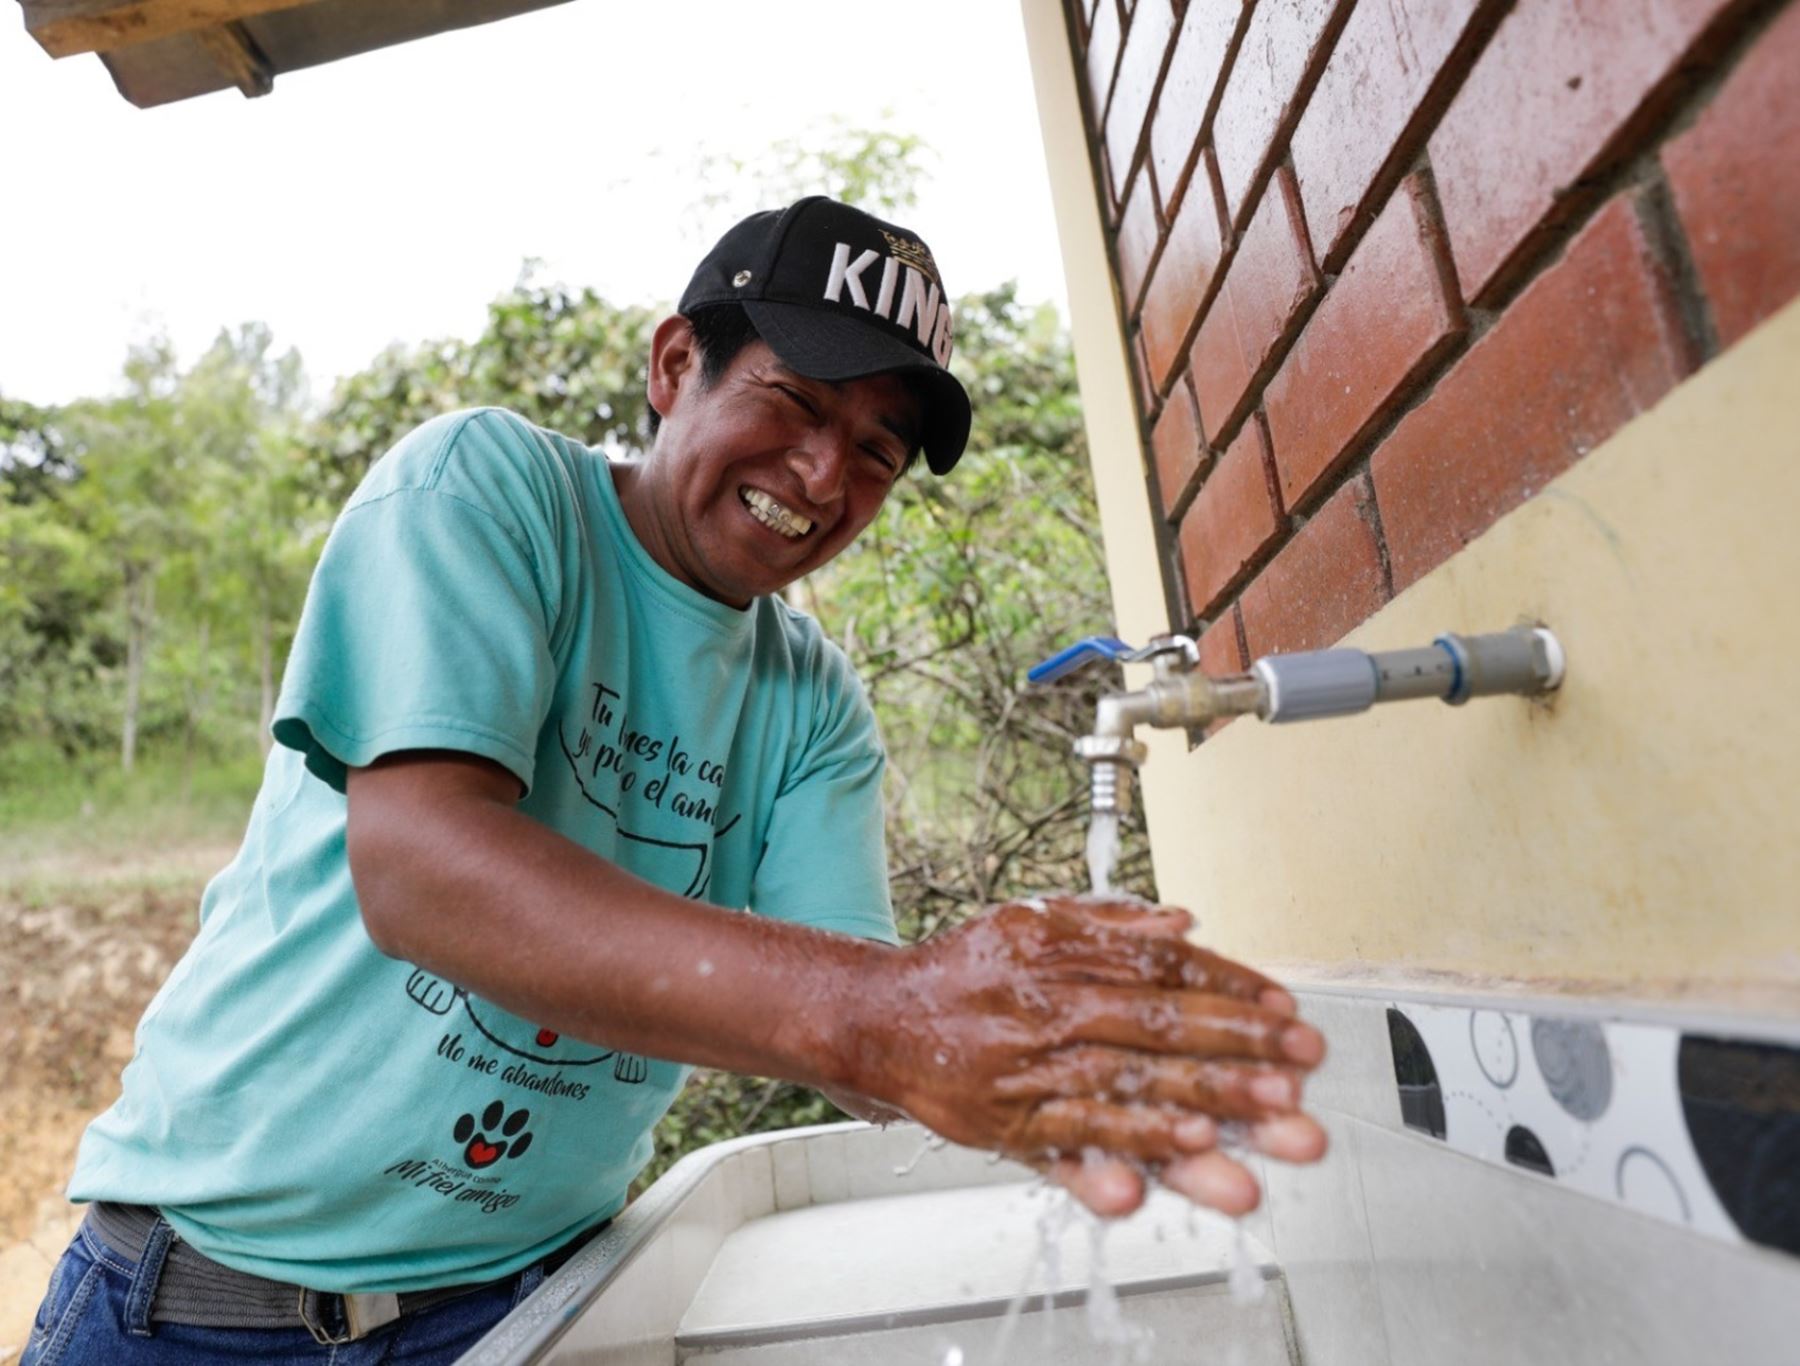 Más de 5,000 pobladores de siete regiones se beneficiarán con obras de agua potable y saneamiento rural, anunció el Ministerio de Vivienda.